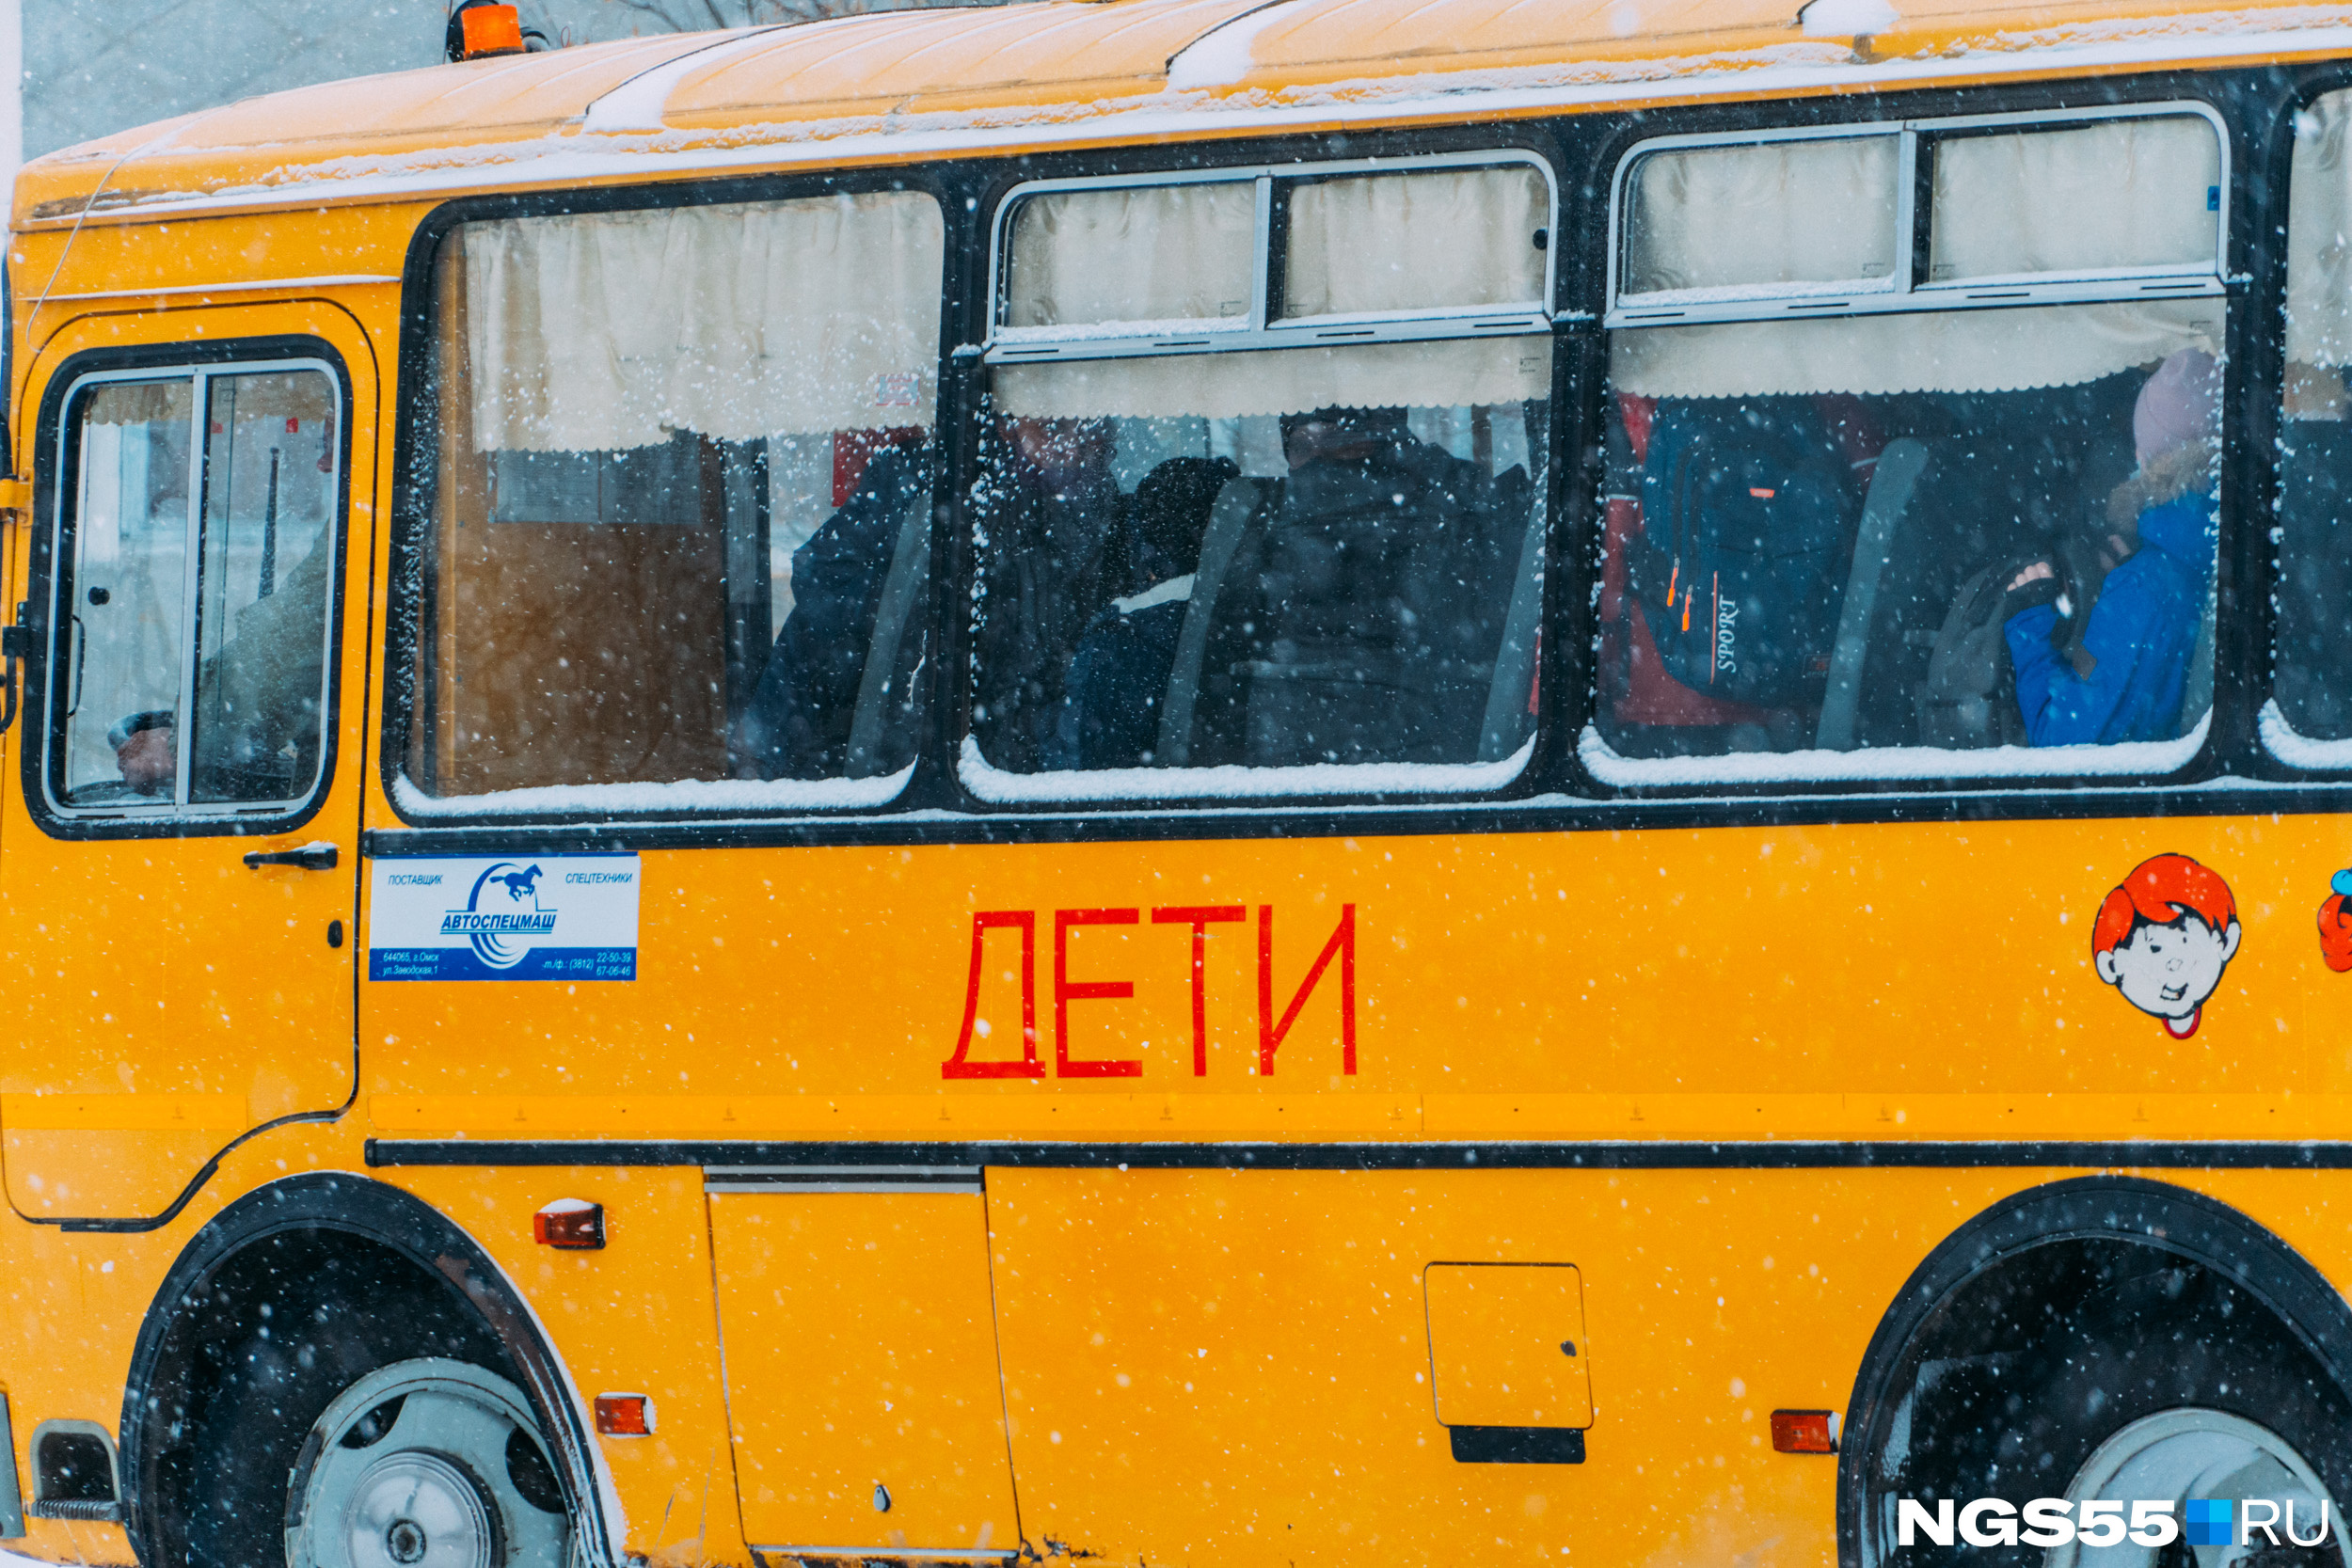 Учитель объяснила, что выгнала пятиклассника из автобуса в Чите, т.к. не было мест